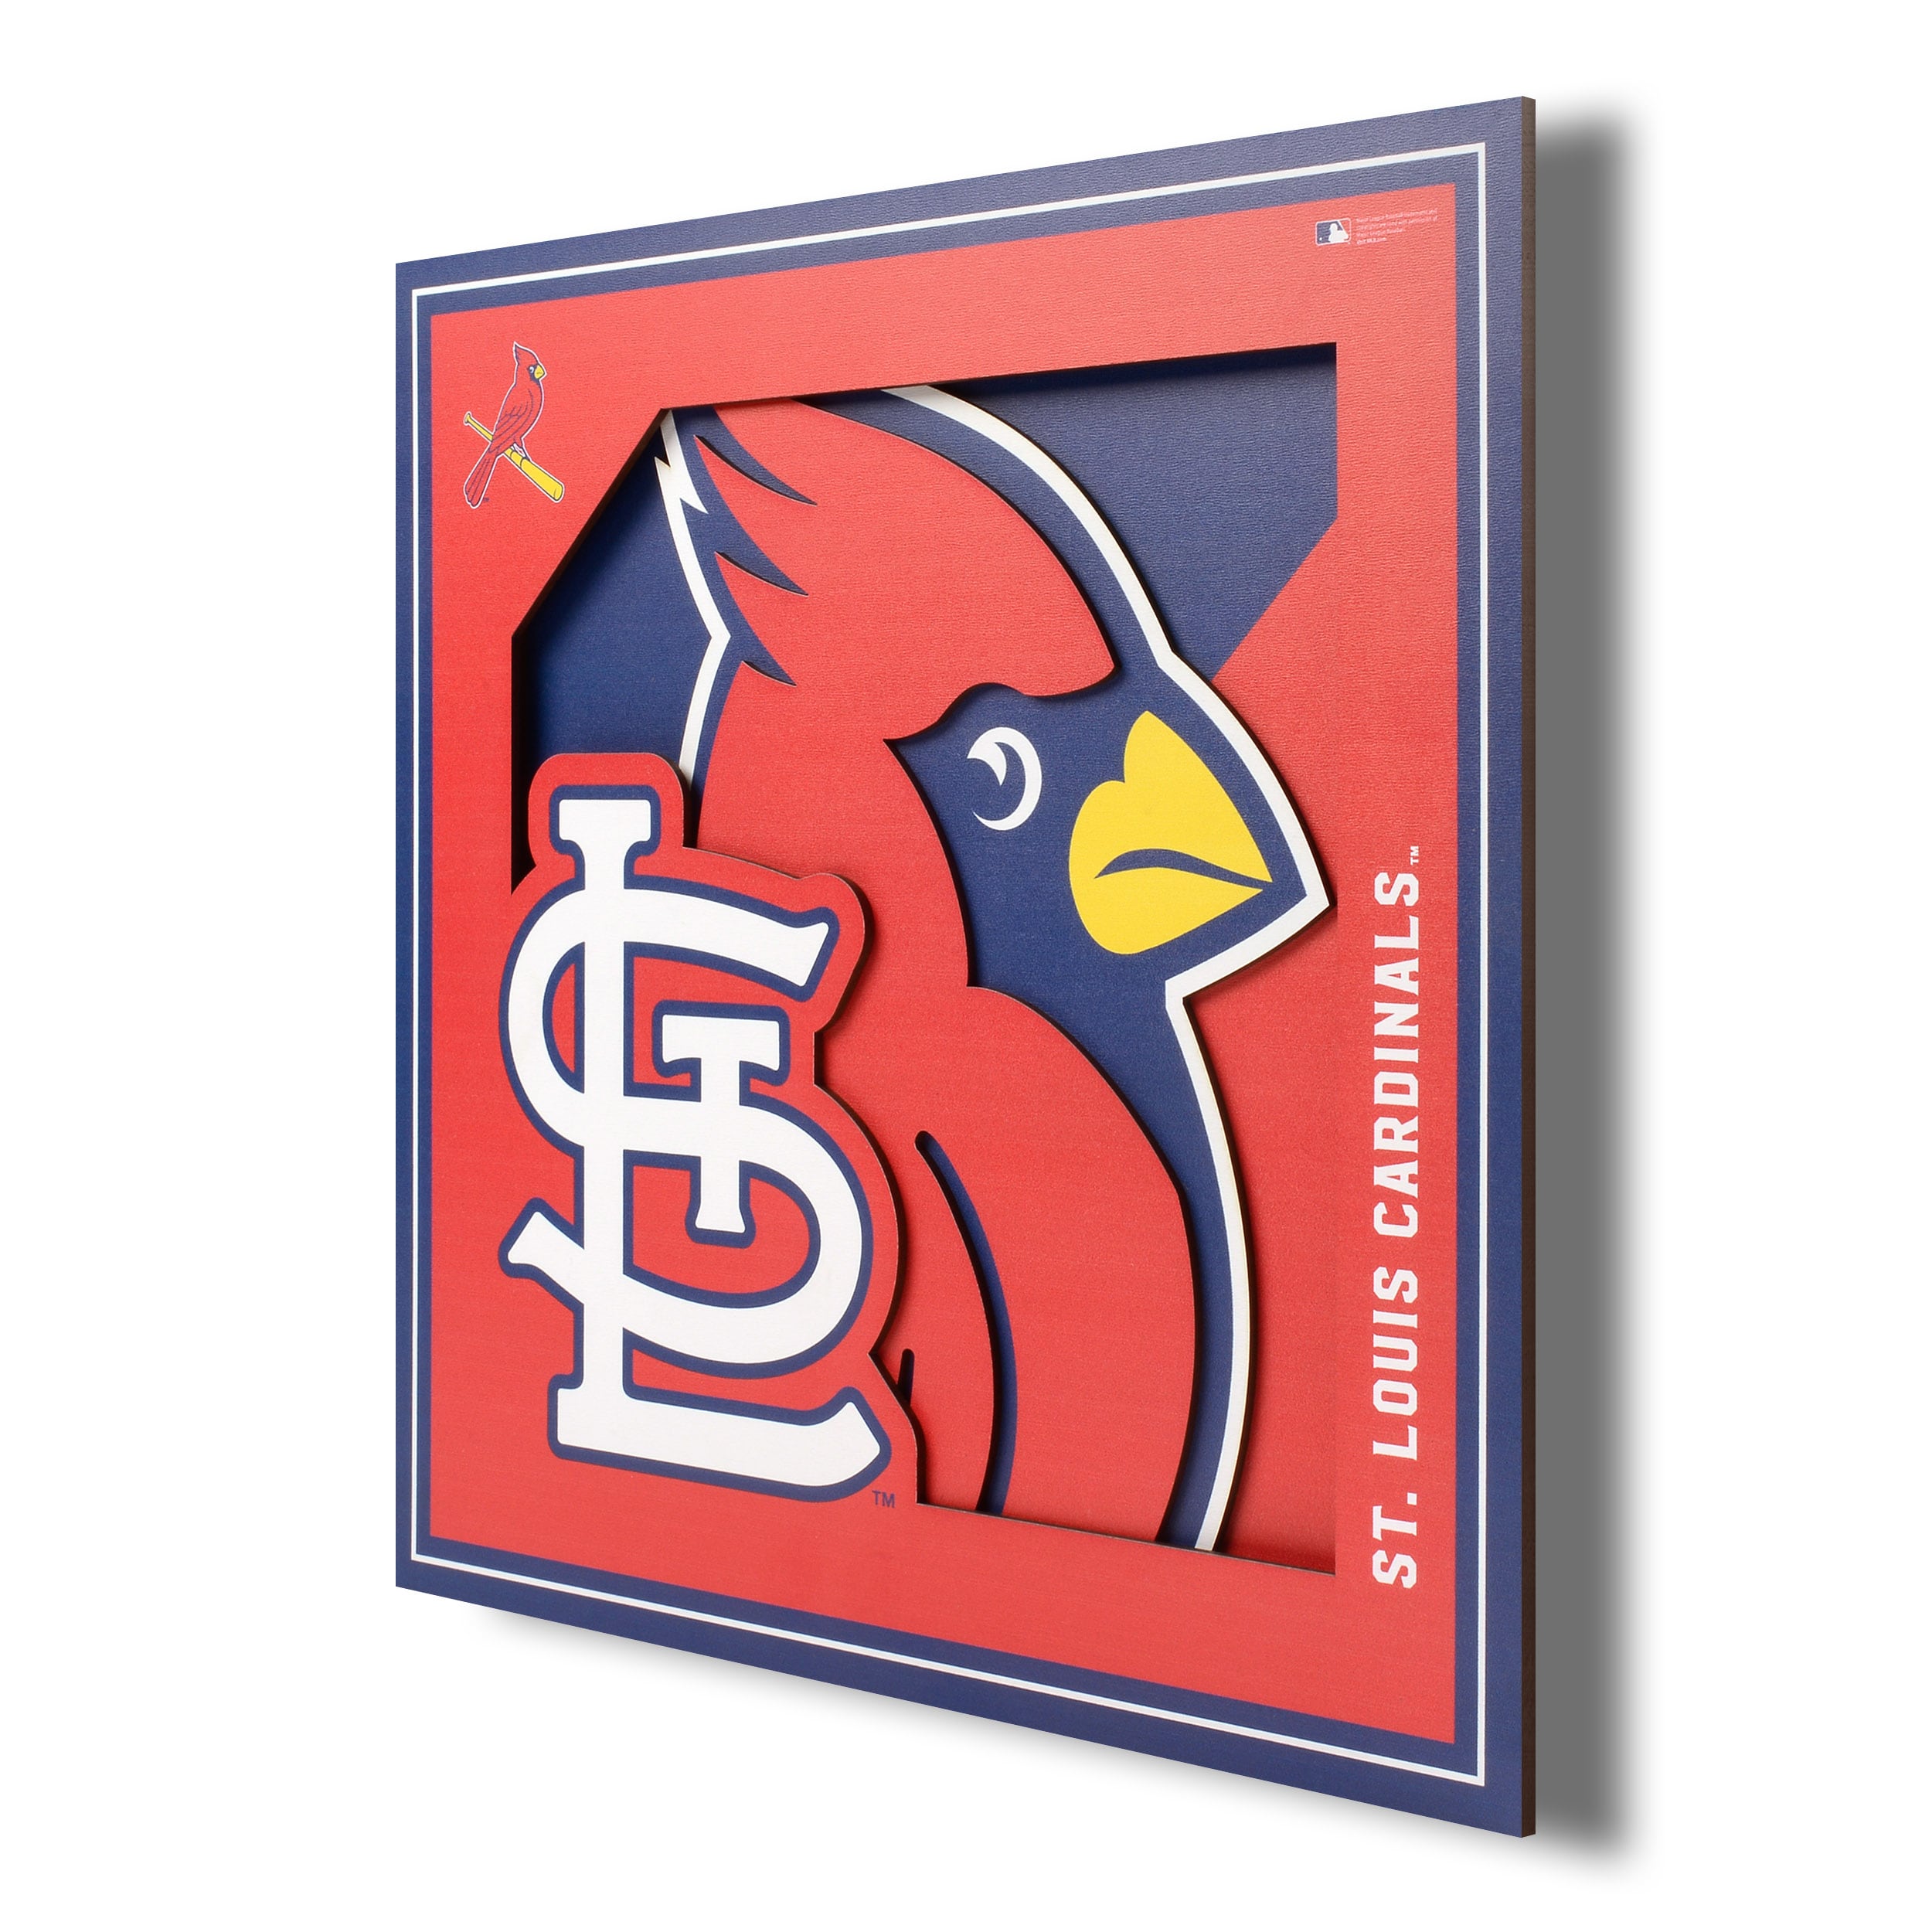 St. Louis Cardinals Mosaic Wall Art Print of Busch Stadium from